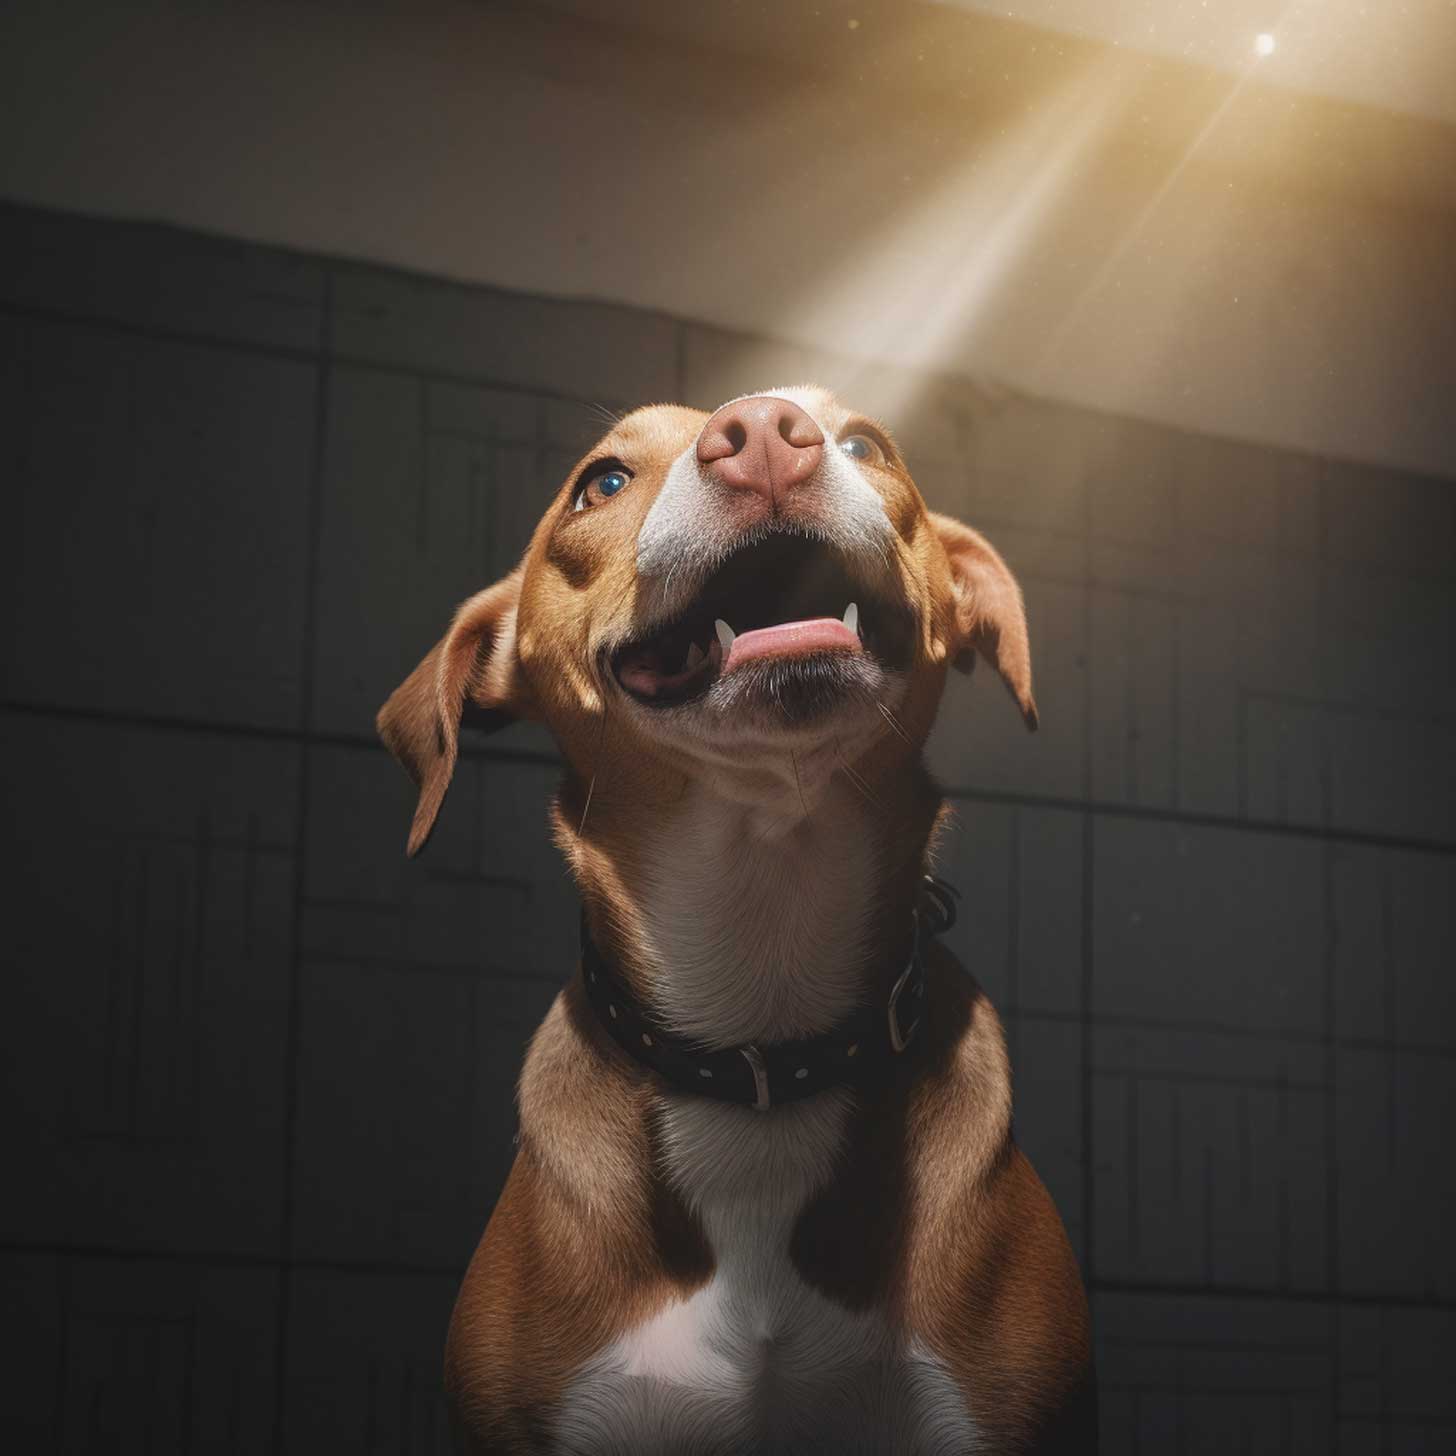 A smiling shelter dog